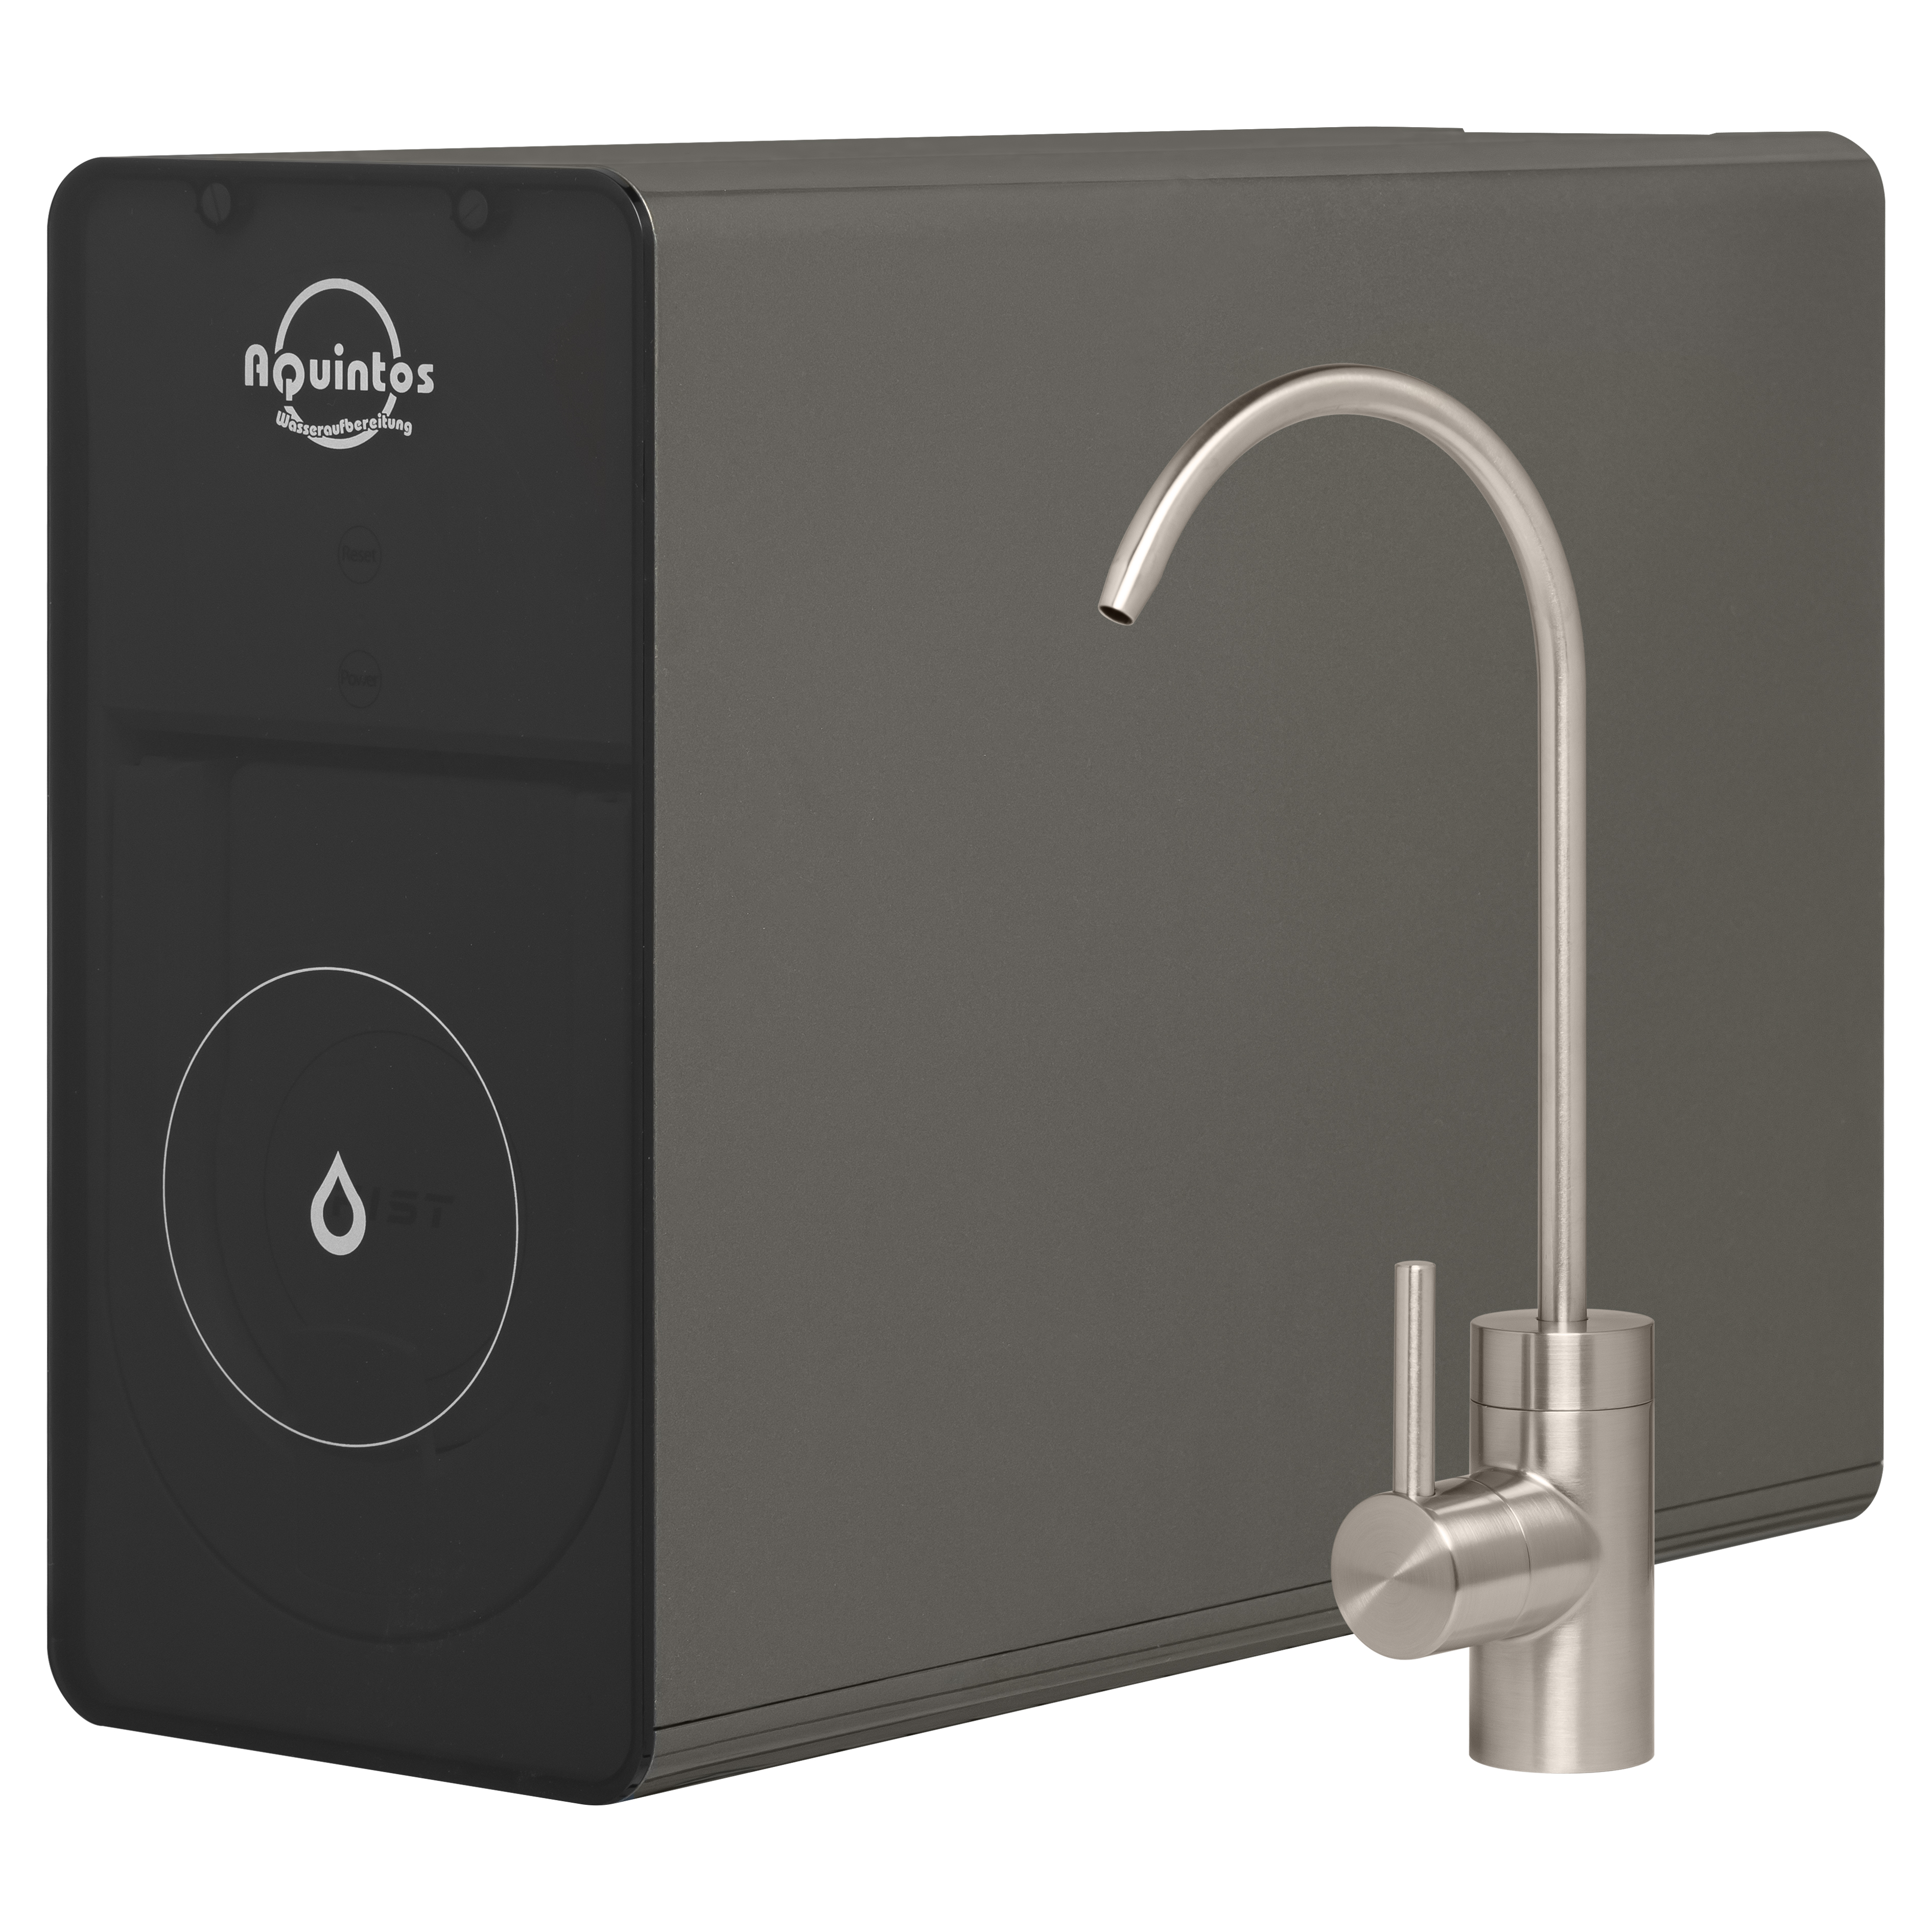 Фильтр для очистки воды в квартире Aquintos IOS